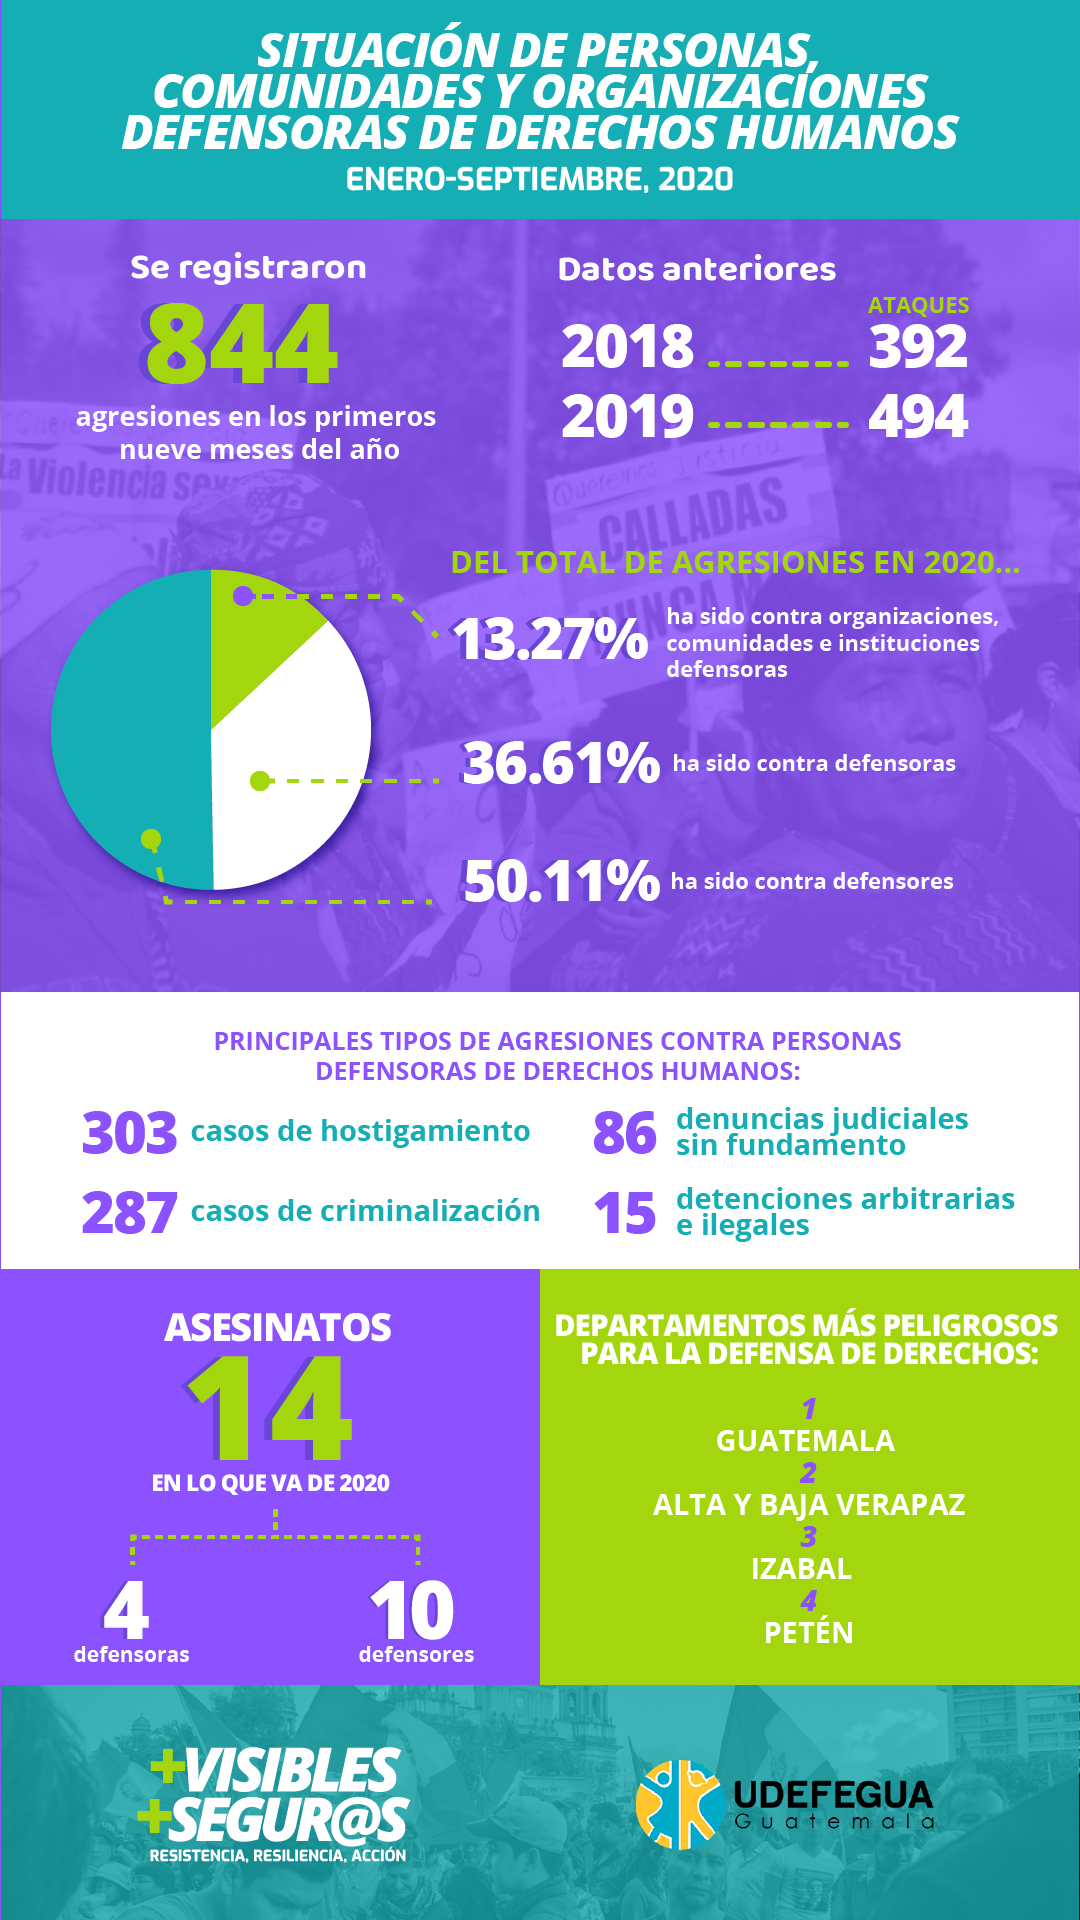 SITUACIÓN DE PERSONAS, COMUNIDADES Y ORGANIZACIONES DEFENSORAS DE DDHH GUATEMALA, ENERO A SEPTIEMBRE DE 2020